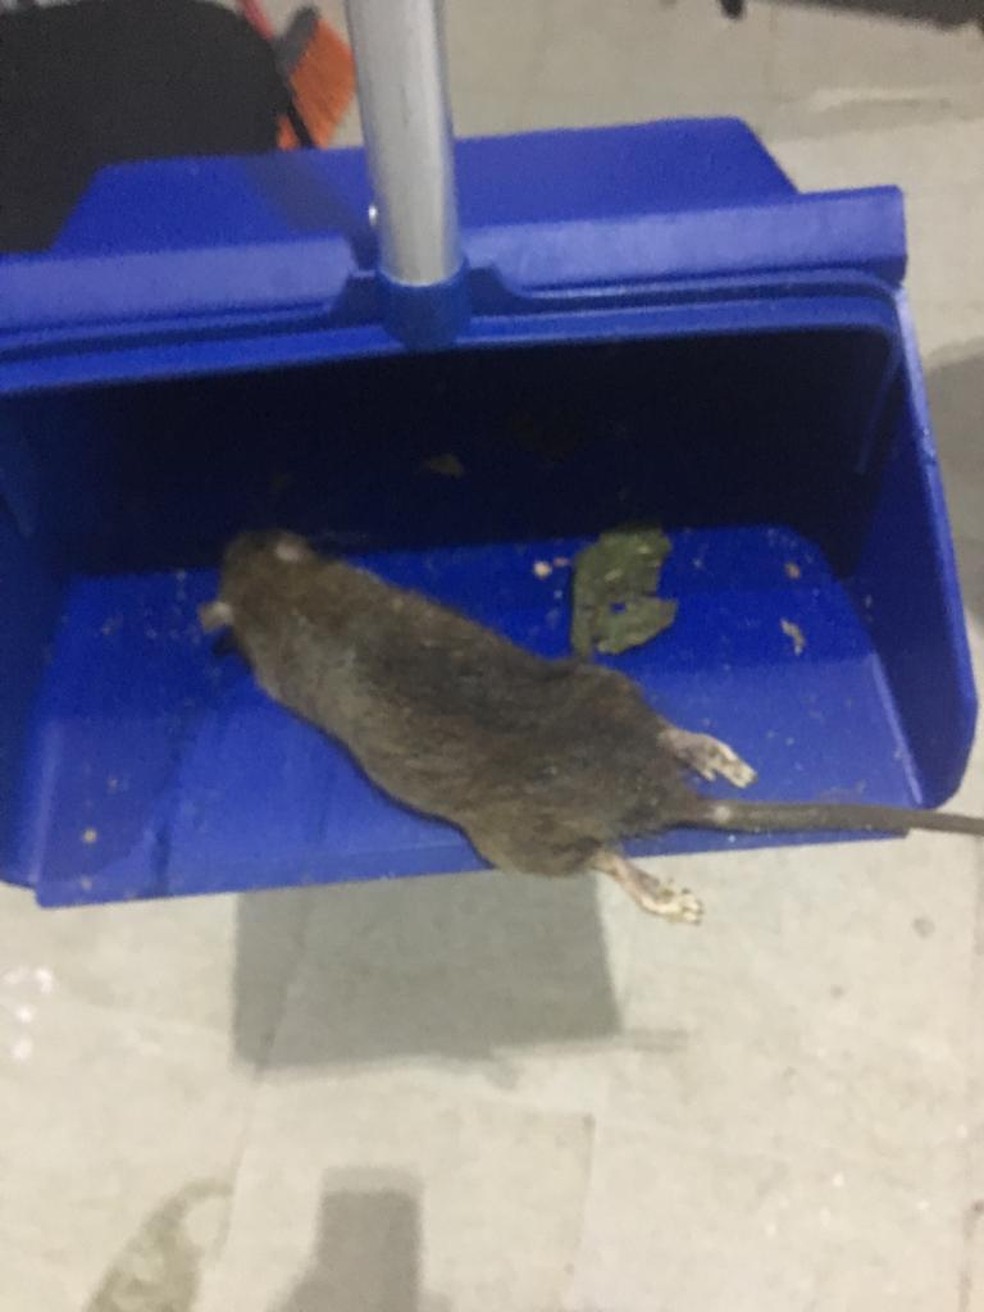 Rato morto sendo recolhido de empresa fornecedora de alimentos na Avenida Brasil â?? Foto: ReproduÃ§Ã£o/Arquivo Pessoal